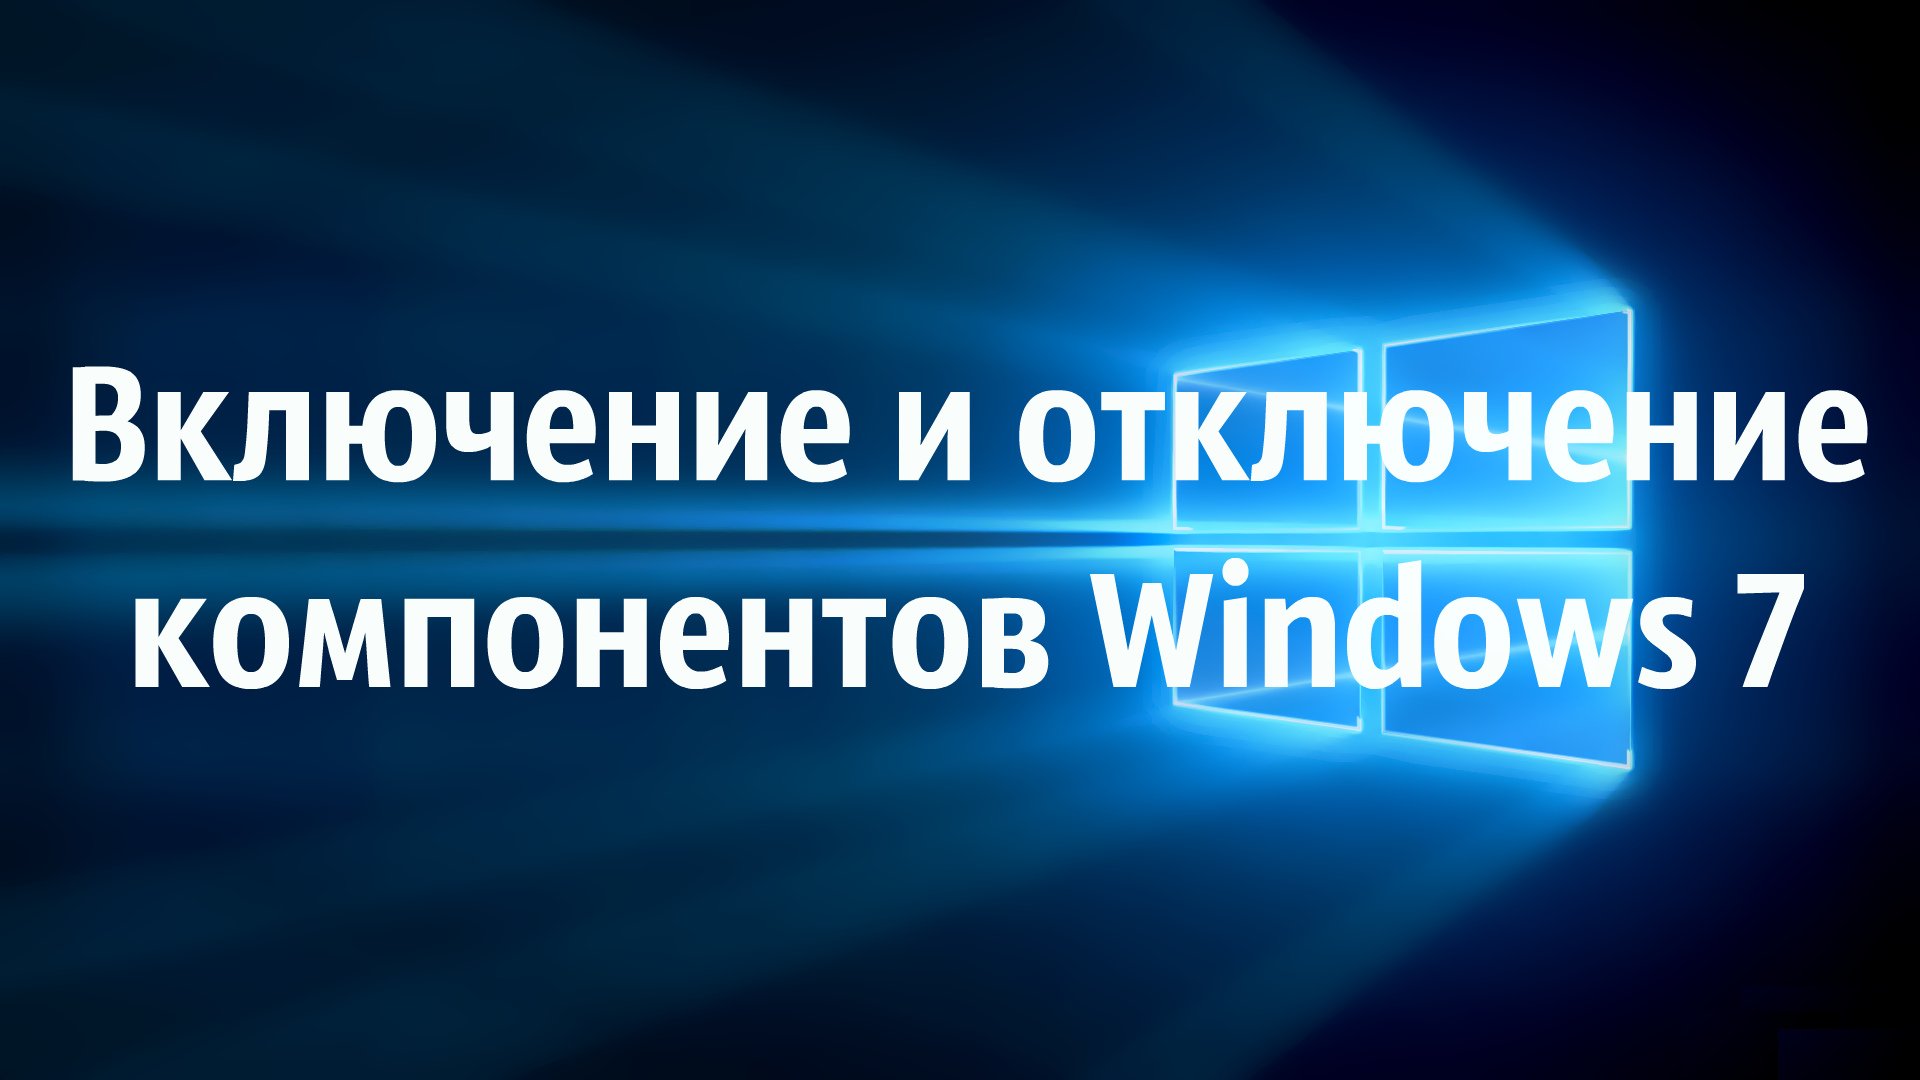 Включение и отключение компонентов в Windows 7